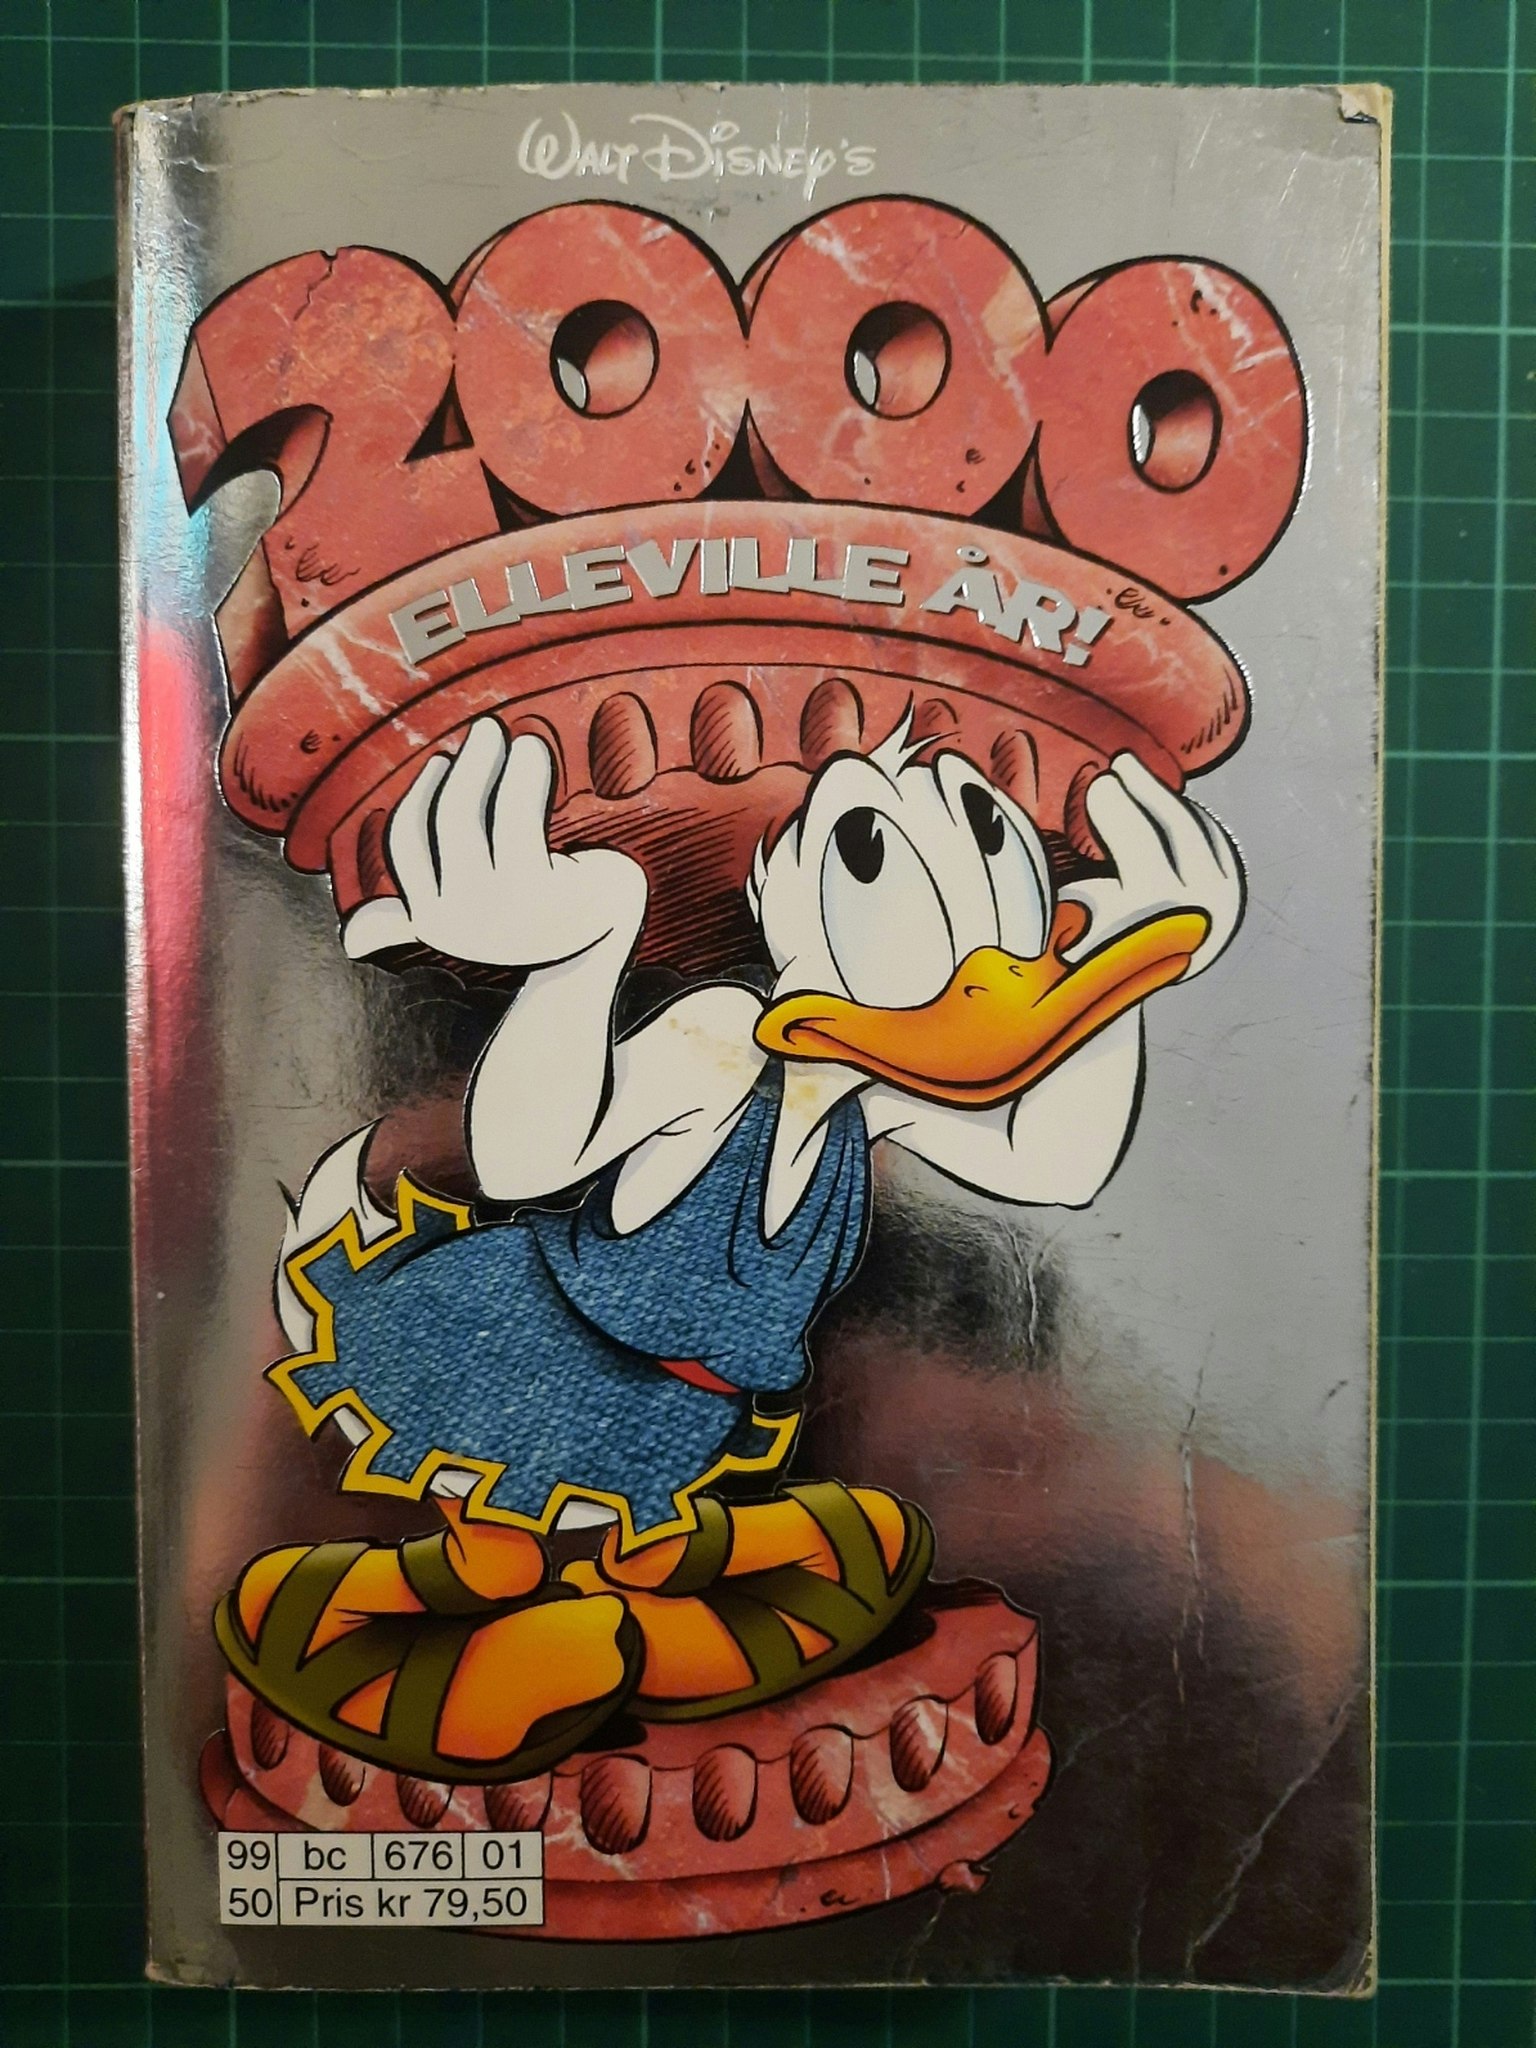 Walt Disney's 2000 elleville år!